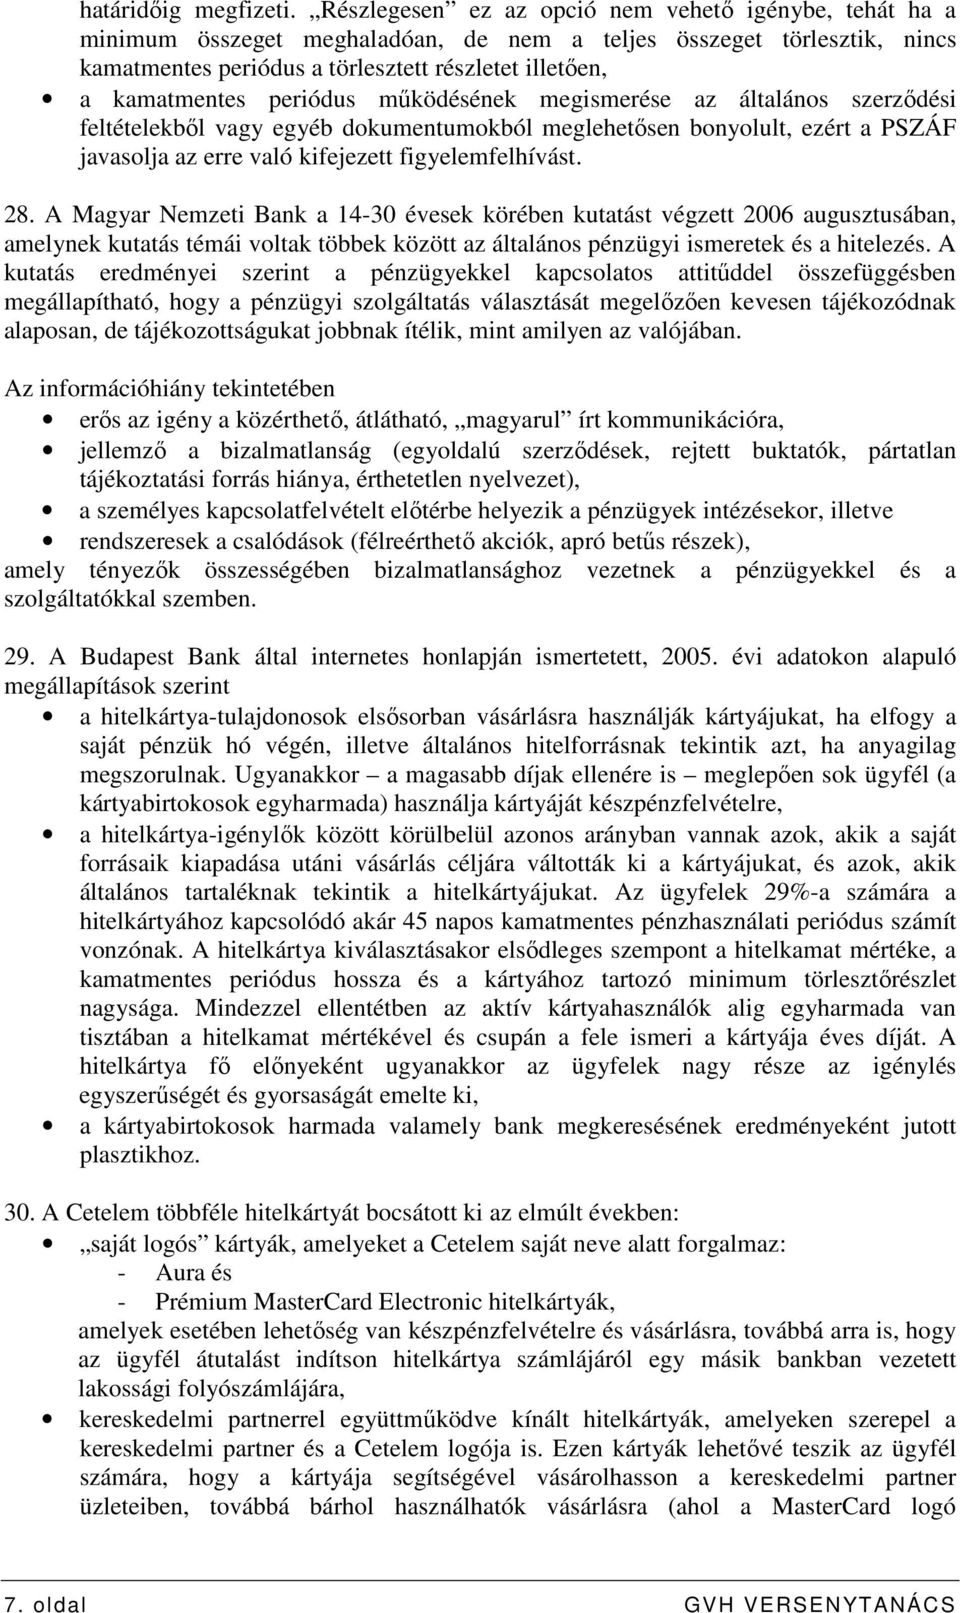 periódus mőködésének megismerése az általános szerzıdési feltételekbıl vagy egyéb dokumentumokból meglehetısen bonyolult, ezért a PSZÁF javasolja az erre való kifejezett figyelemfelhívást. 28.